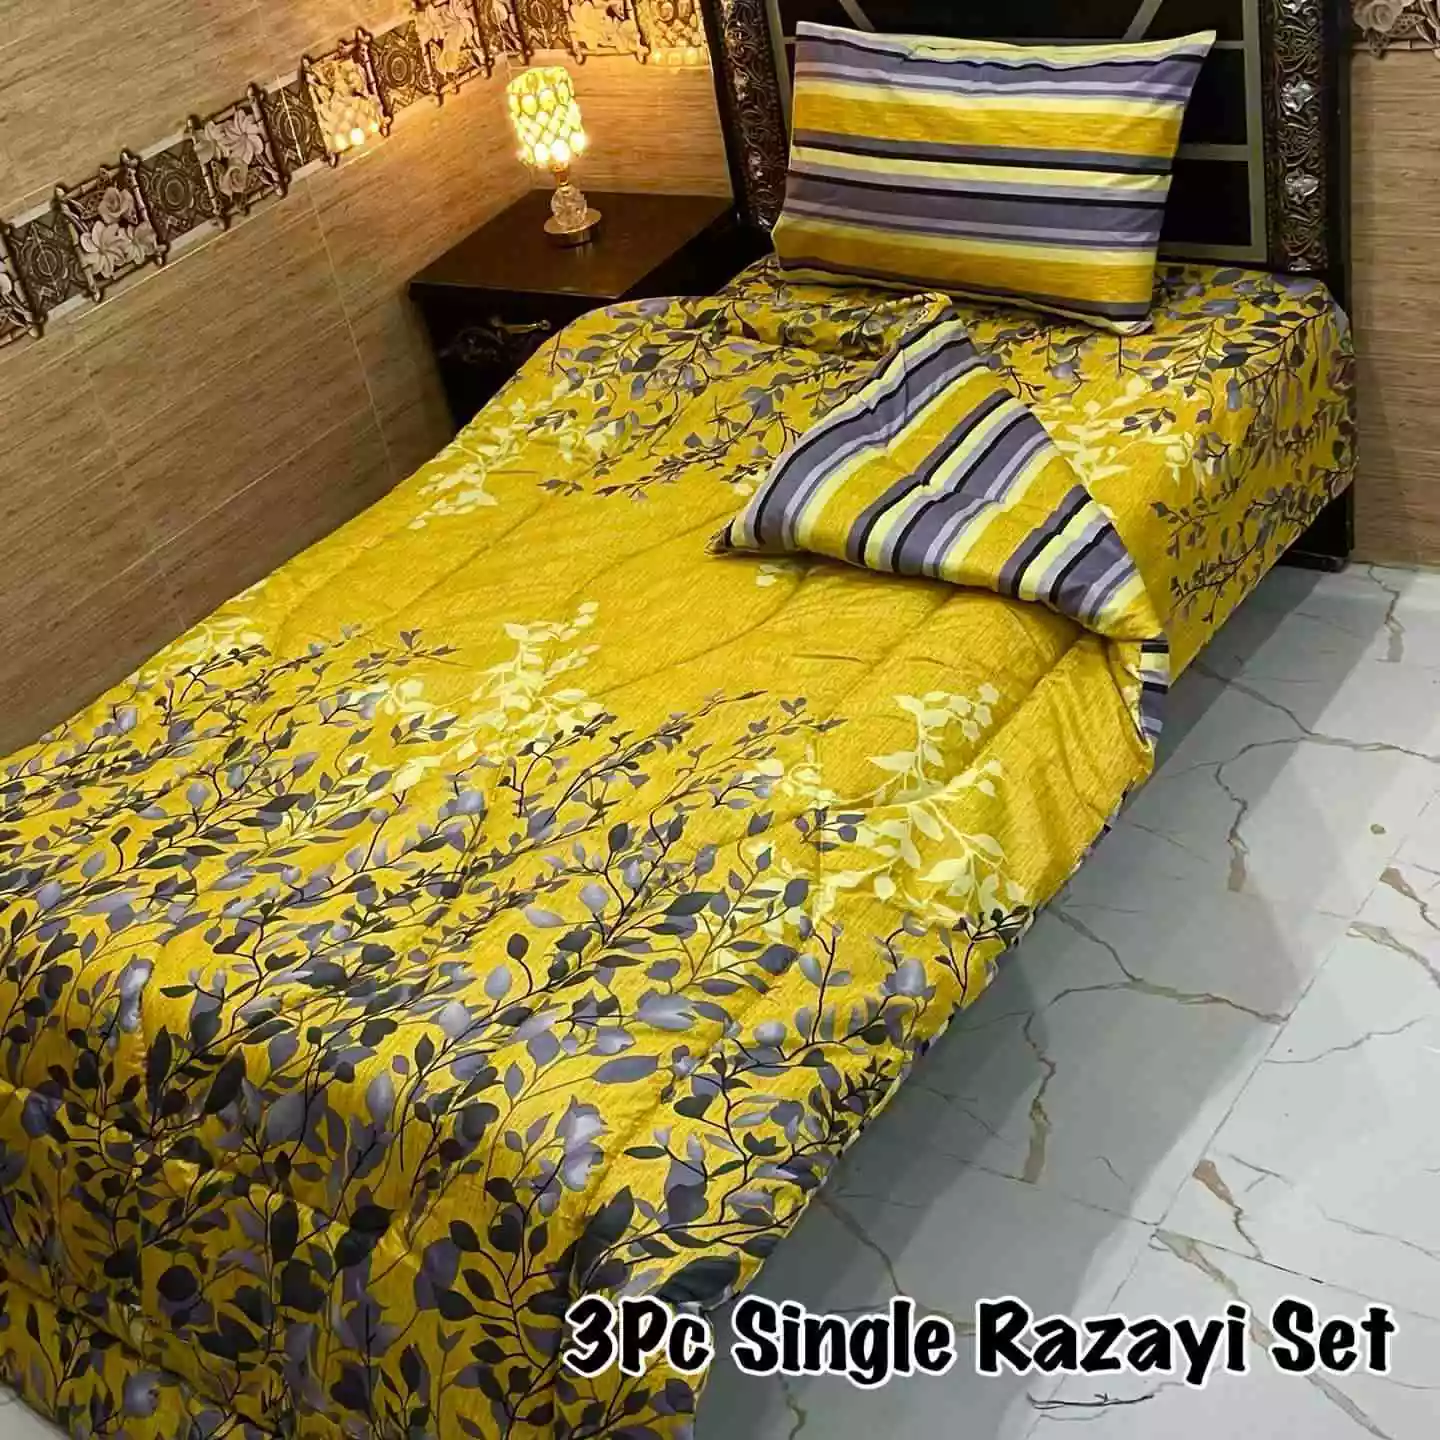 DF-VRSSB-4: DFY 3Pc Single Bed Vicky Razai Set